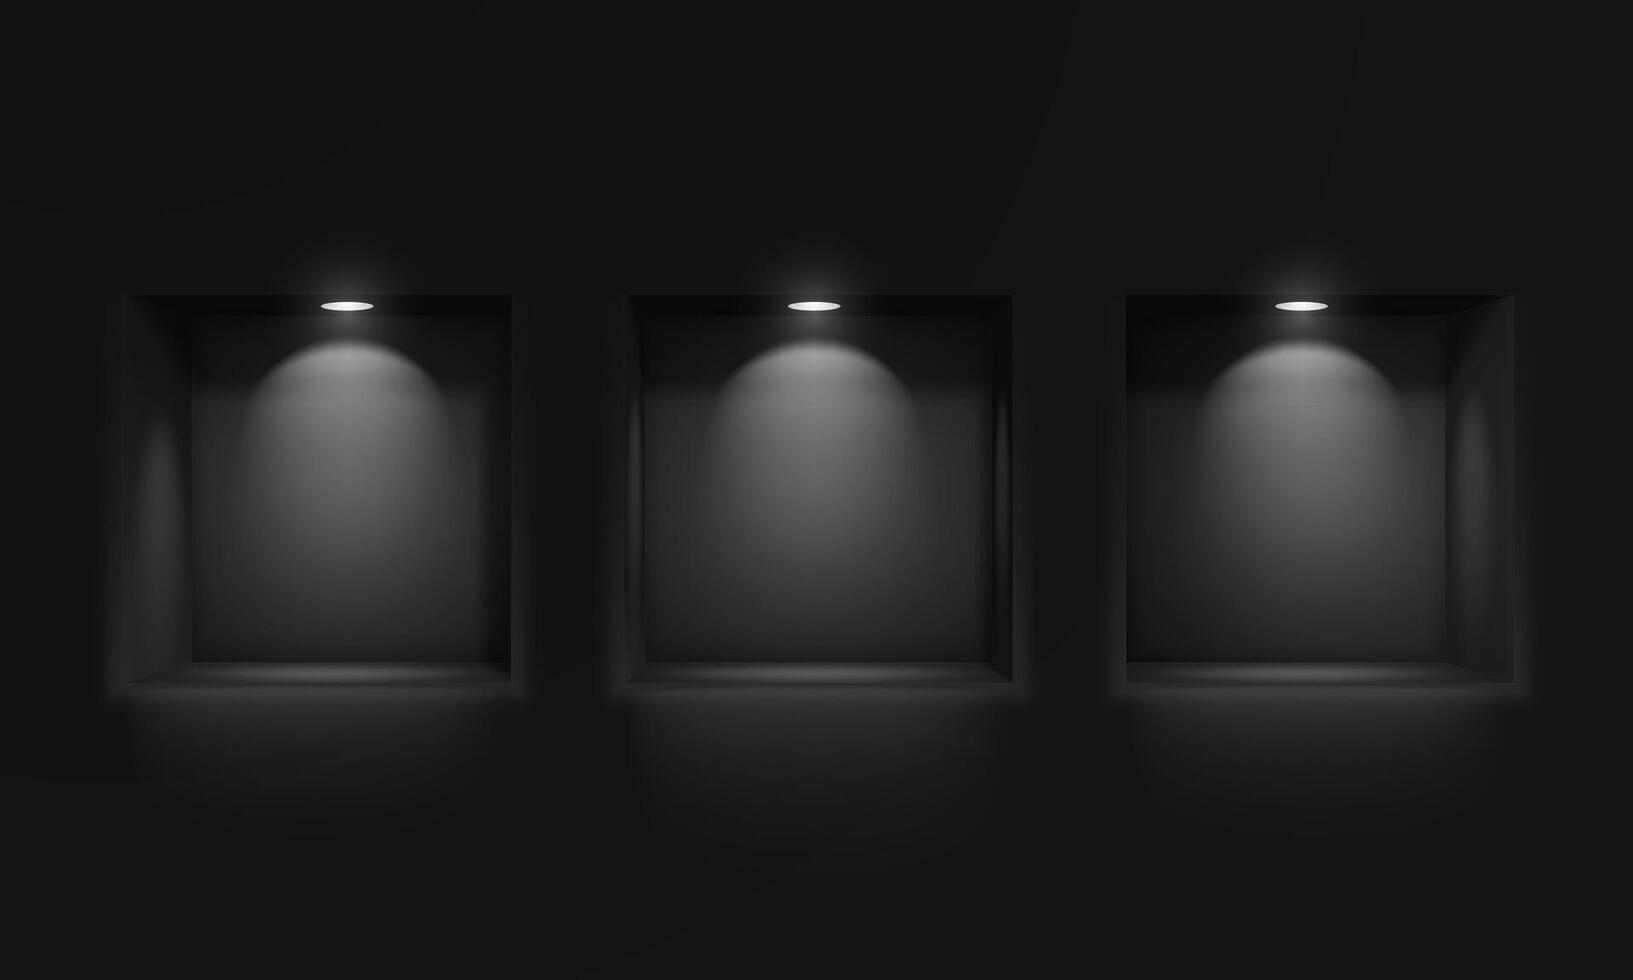 Tres vacío nichos o estantería en un negro pared con hielo lámpara Encendiendo. escaparate, vacío estante para tu producto. vector ilustración.